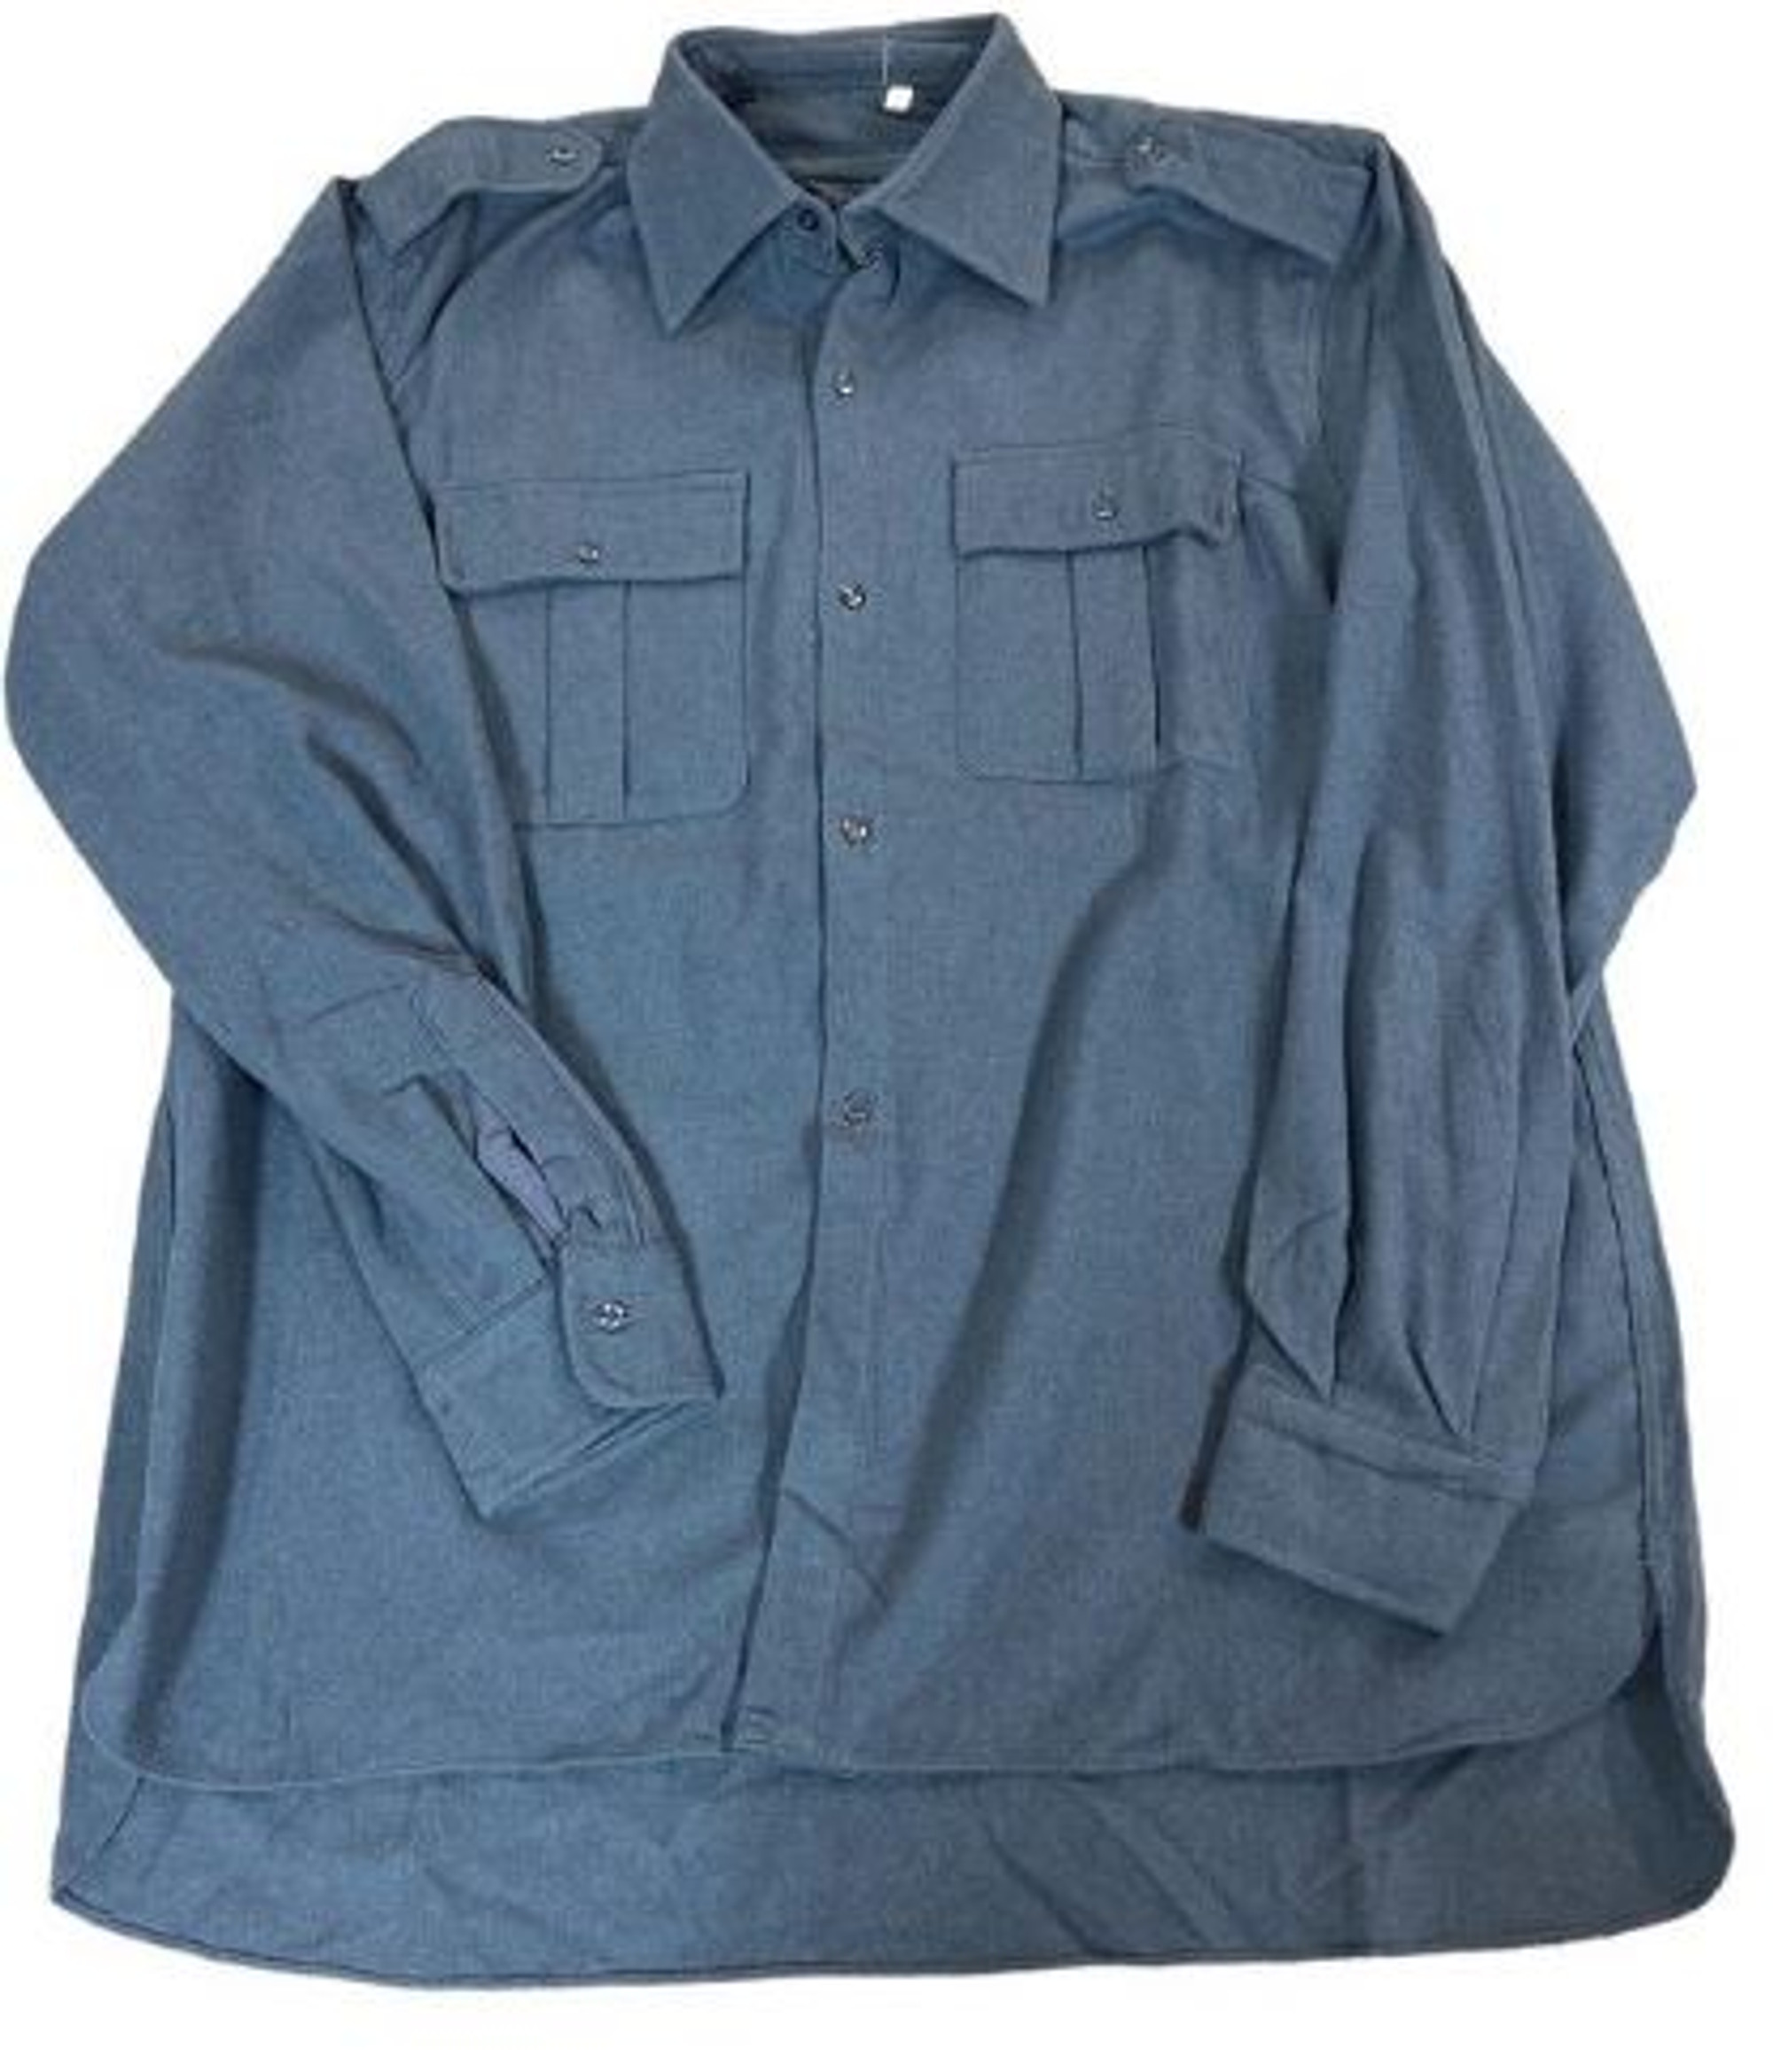 Italian Blue/Grey Flannel Shirt